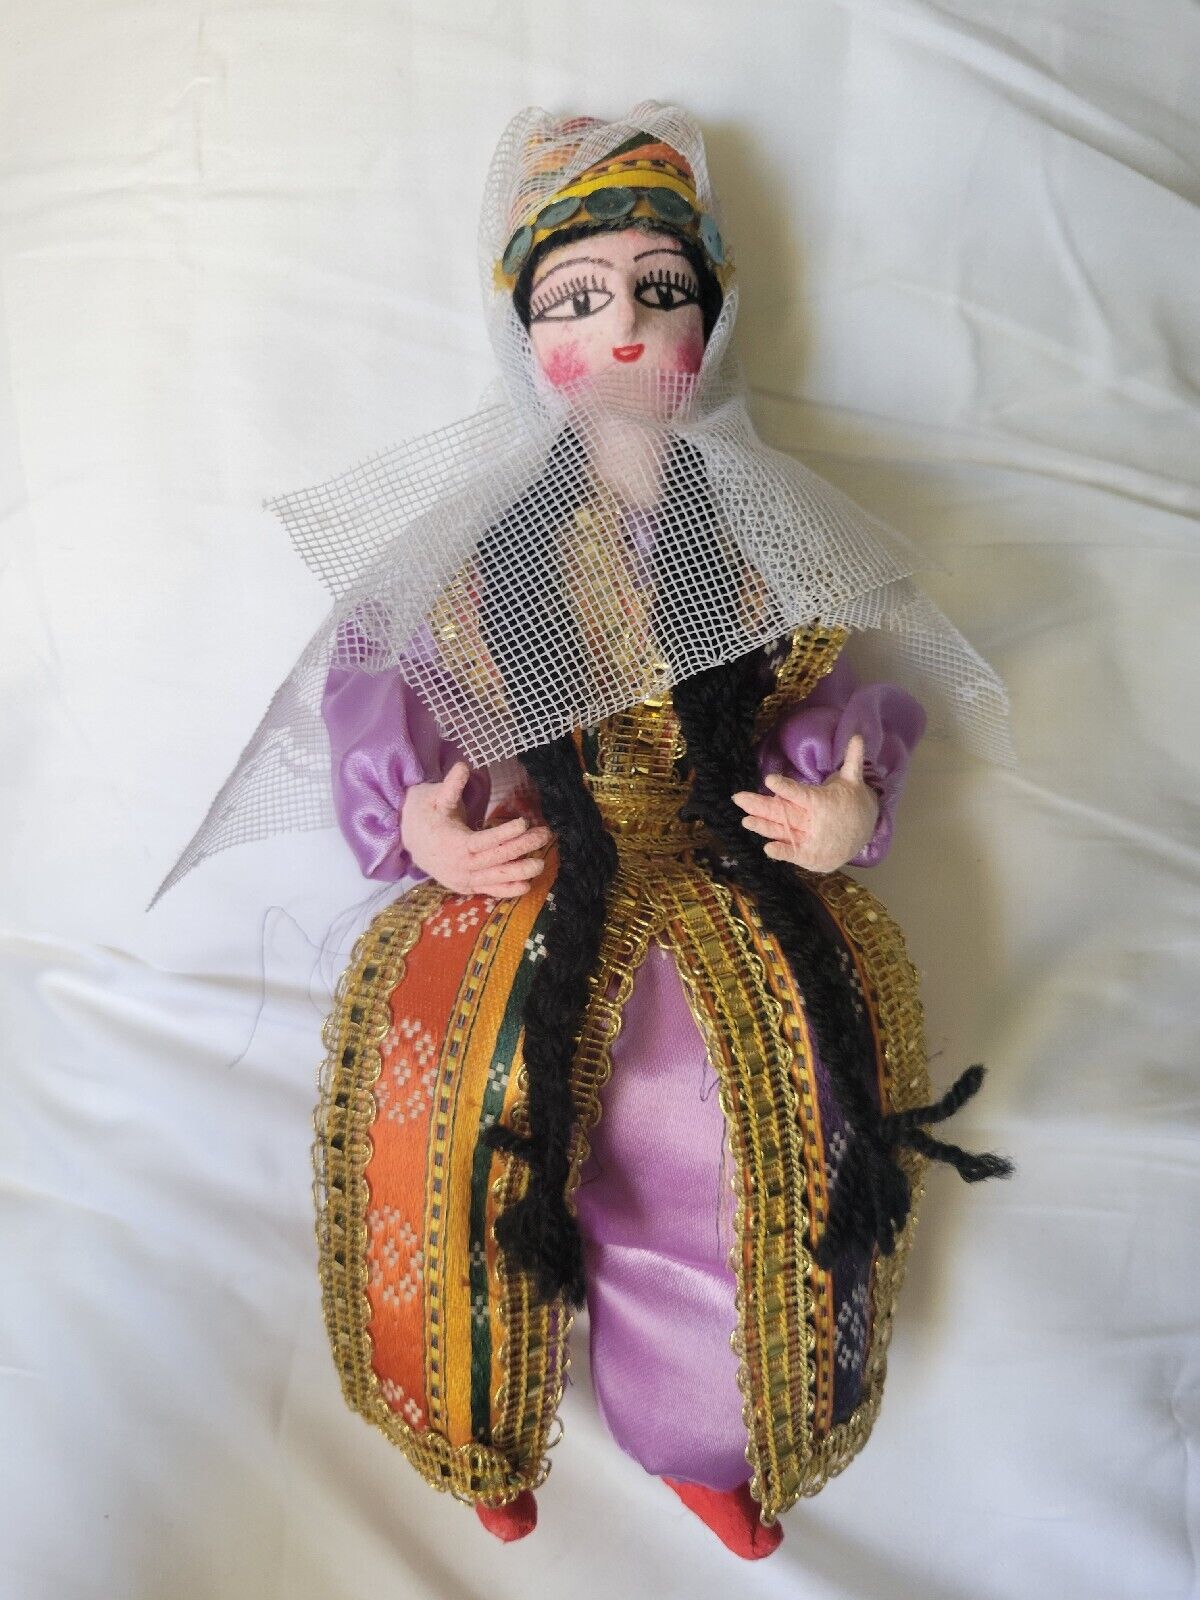 Vintage Sultana Doll In Ottoman Dress Hand Made Turkish Turkey 10